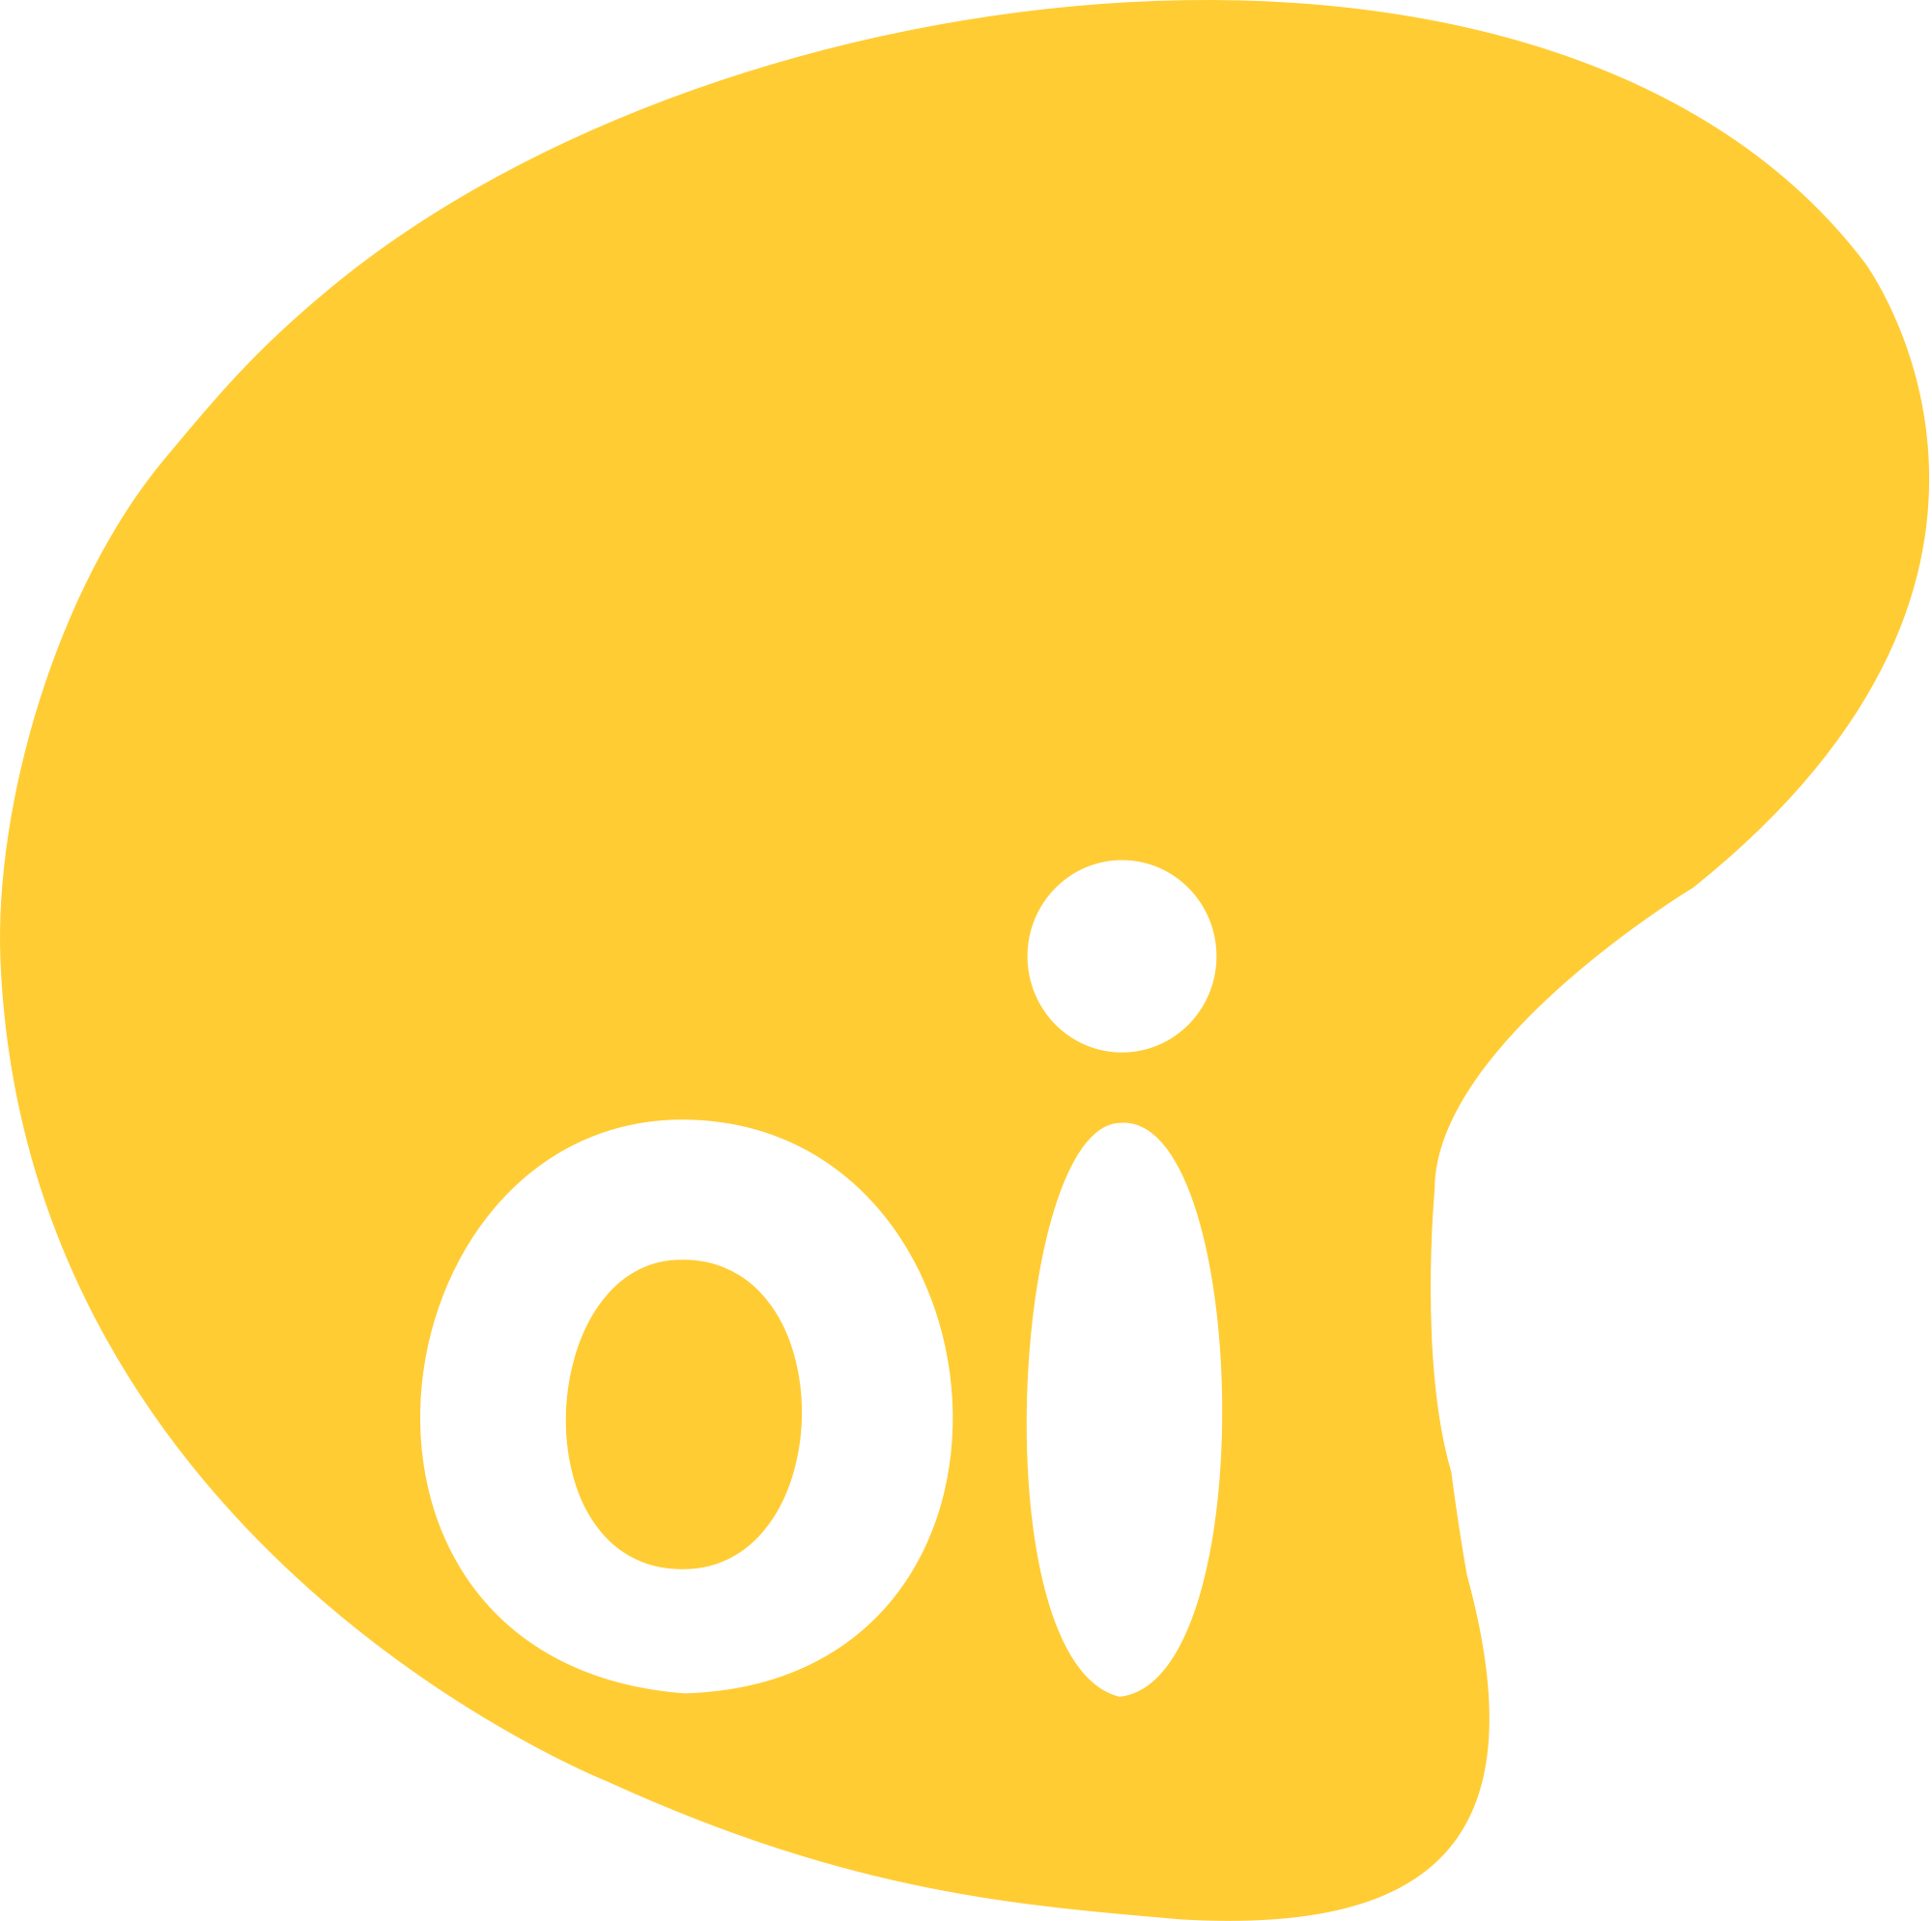 OI